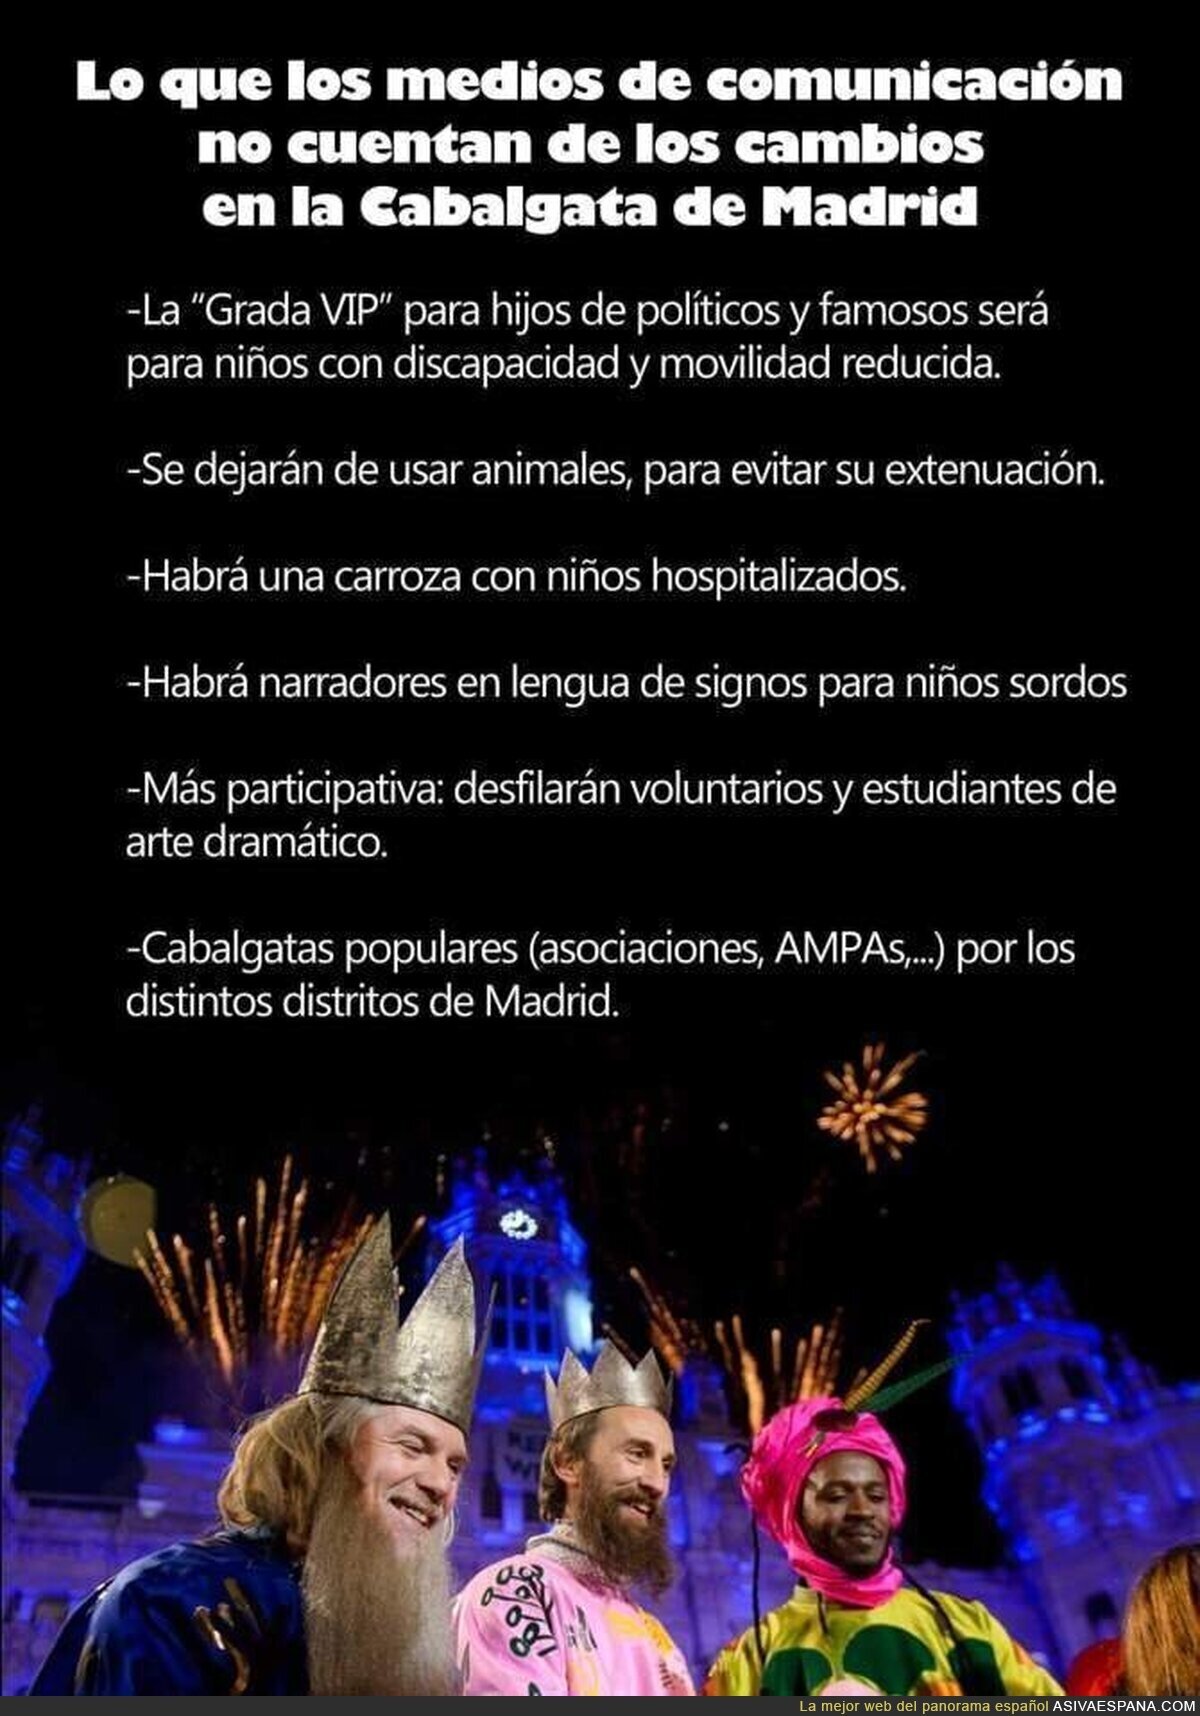 La cabalgata de Reyes Magos en Madrid